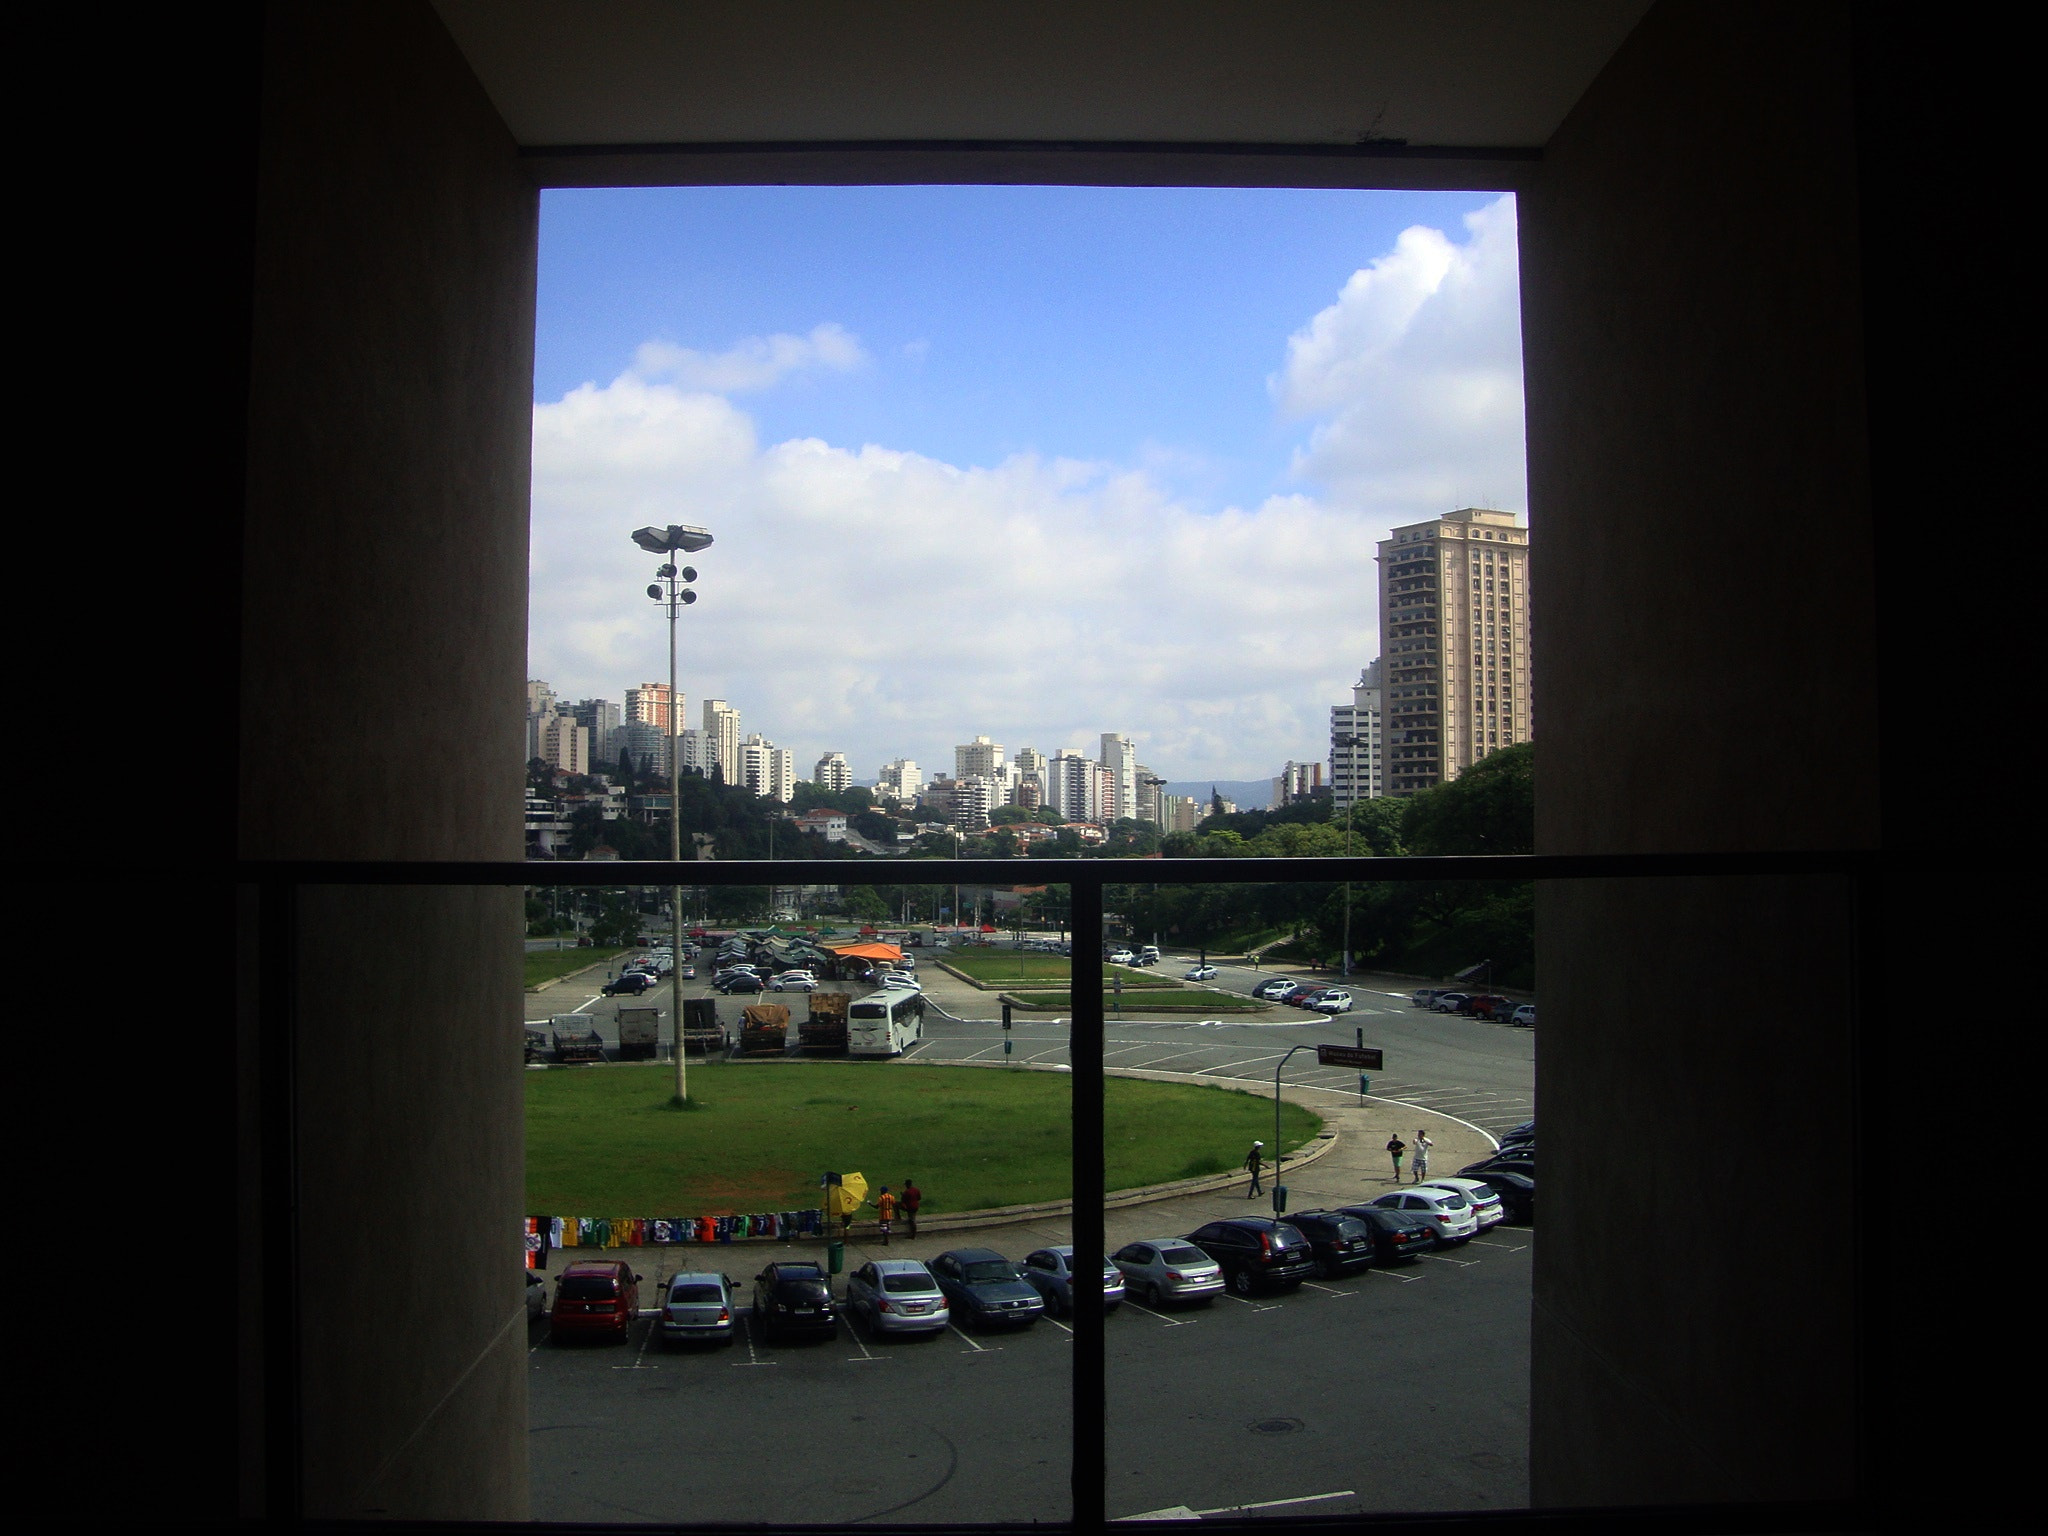 Sony Cyber-shot DSC-W220 sample photo. São paulo city photography